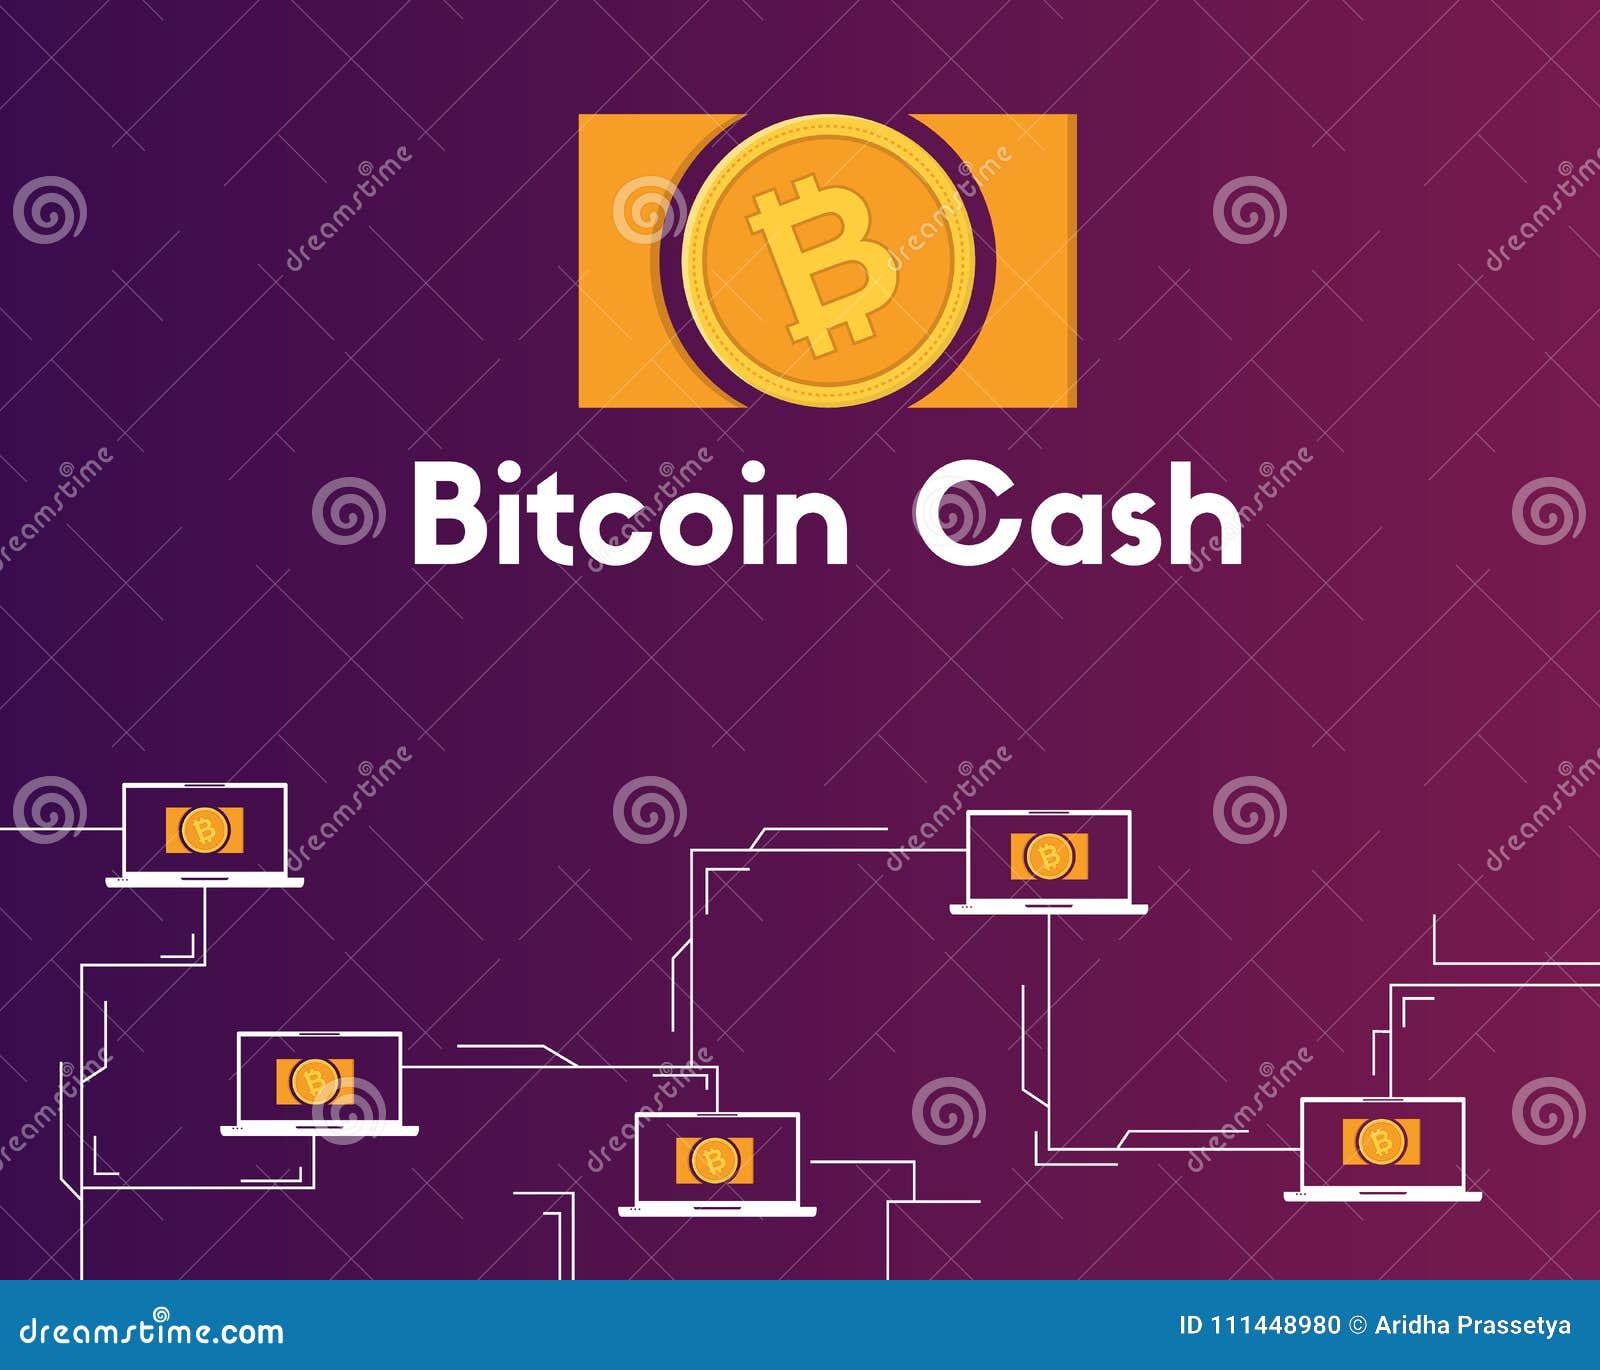 blockchain com bitcoin cash